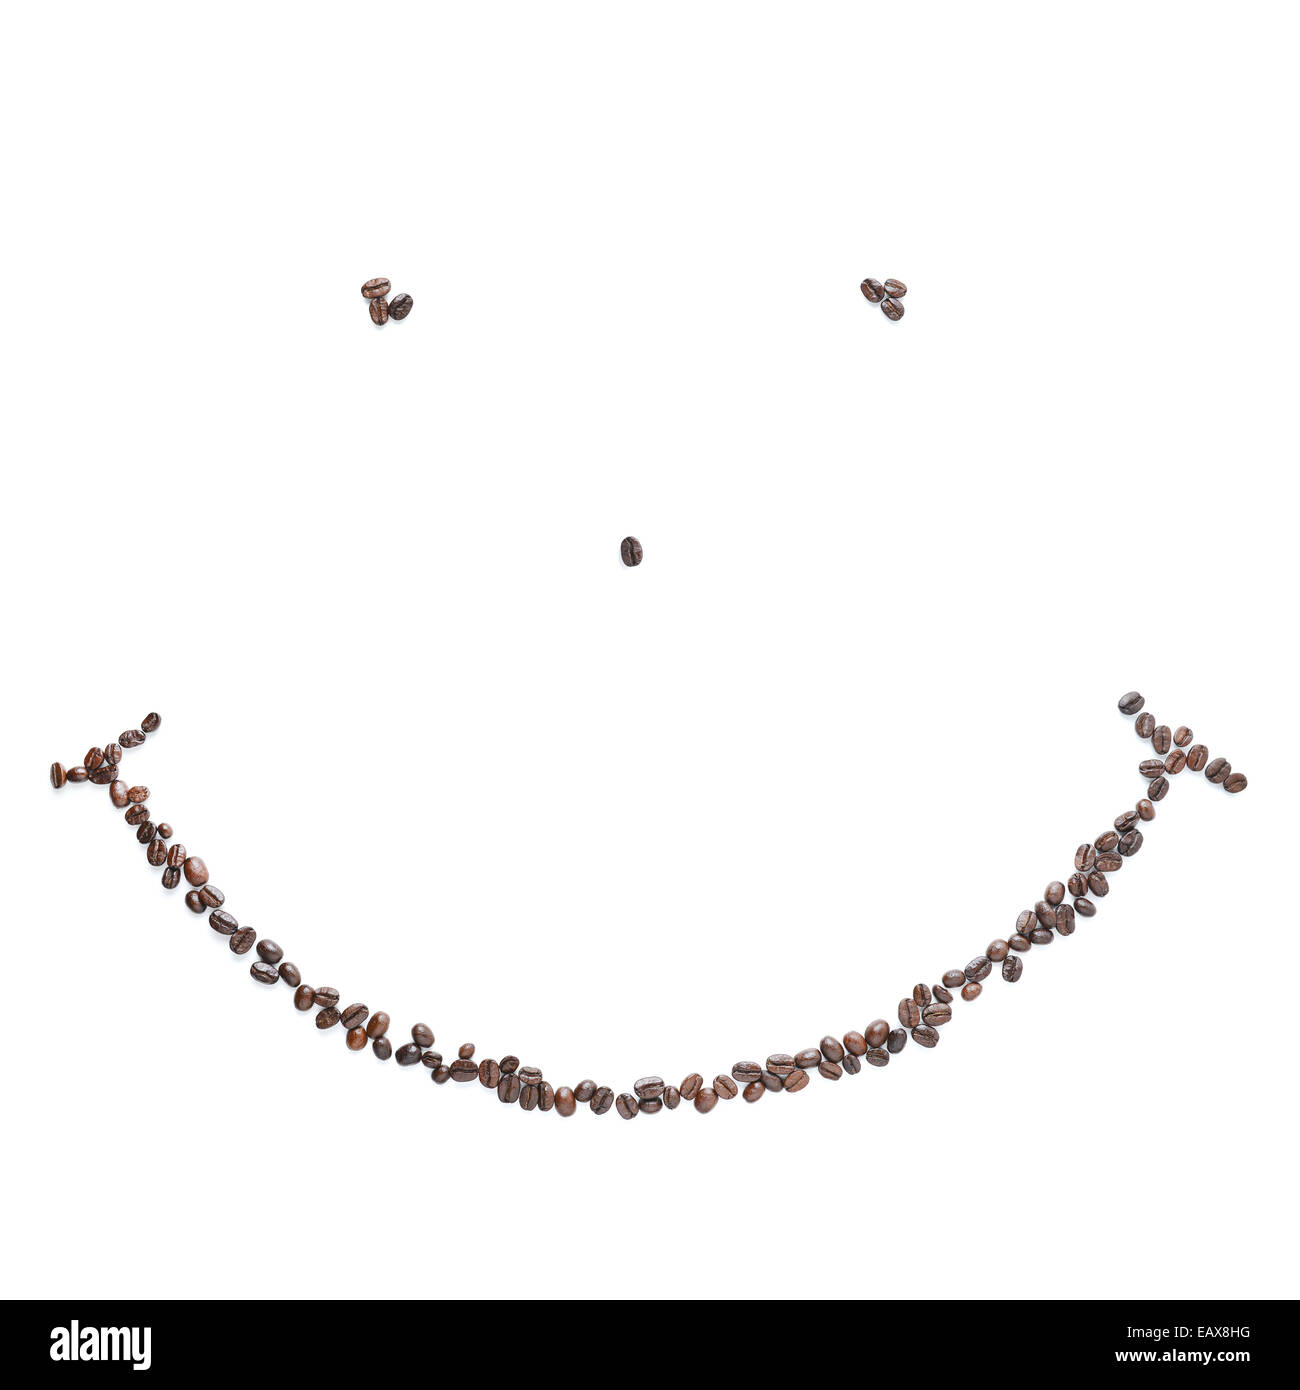 Smile i chicchi di caffè Foto Stock